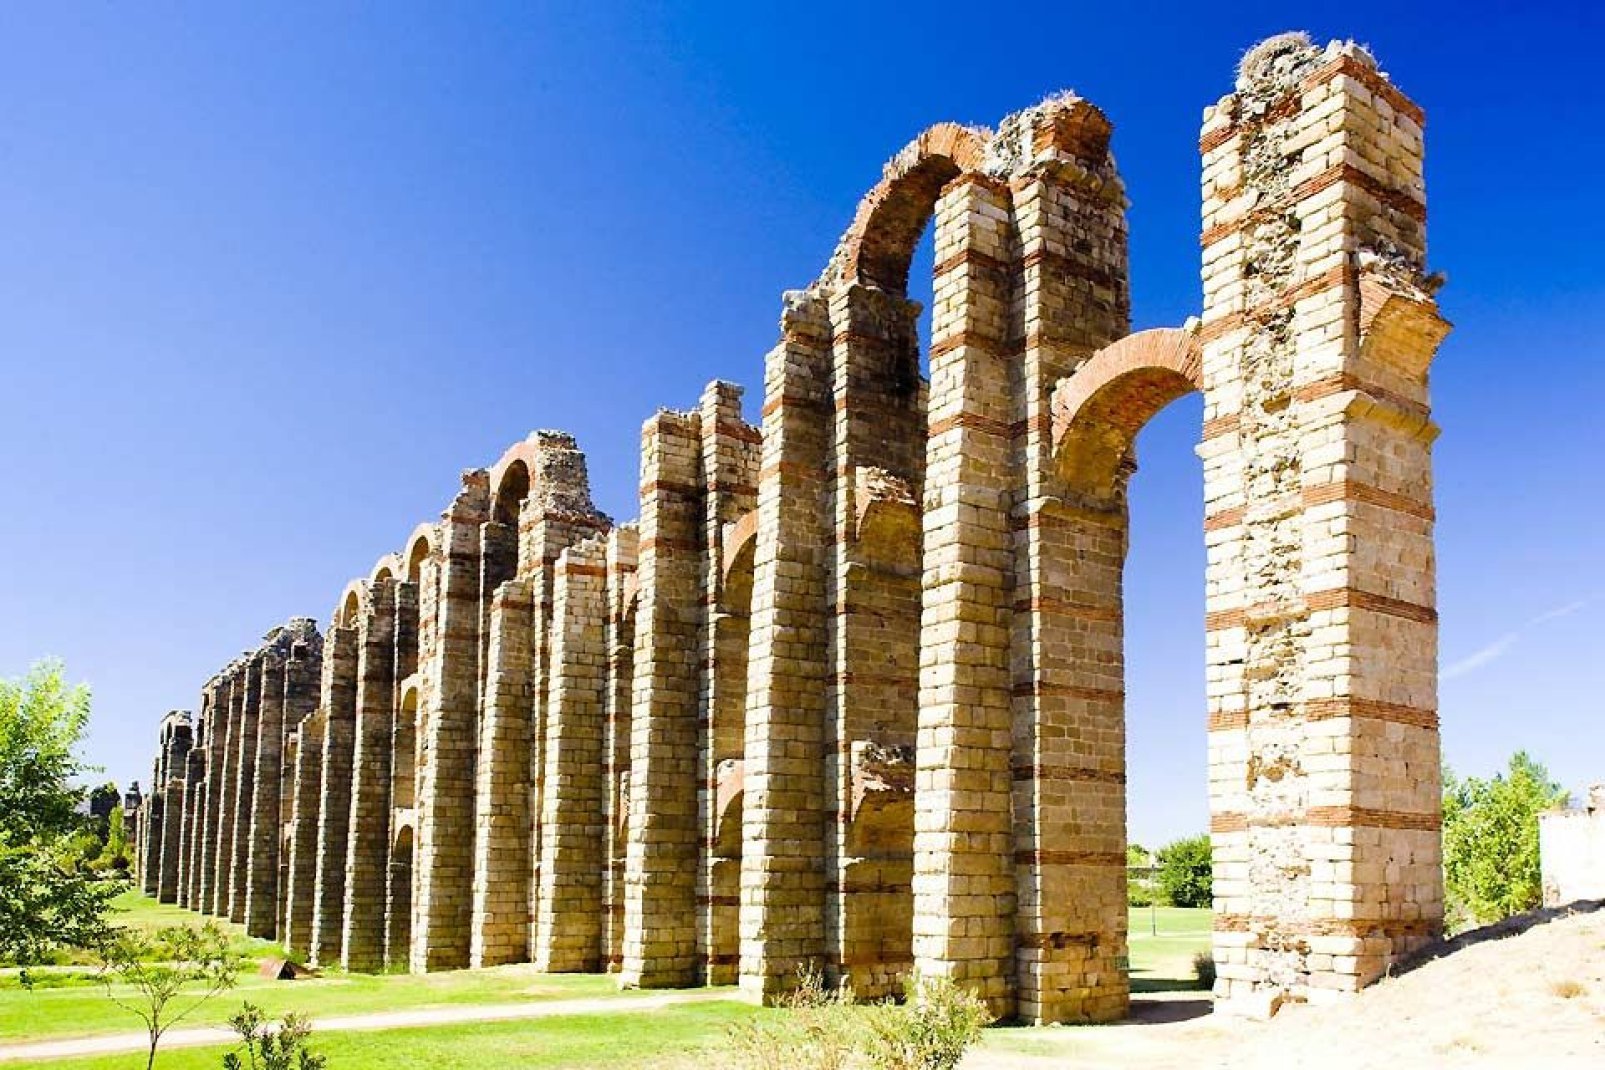 Este acueducto se construyó en la época romana en el valle del Albarregas. Mide 25 metros de alto.